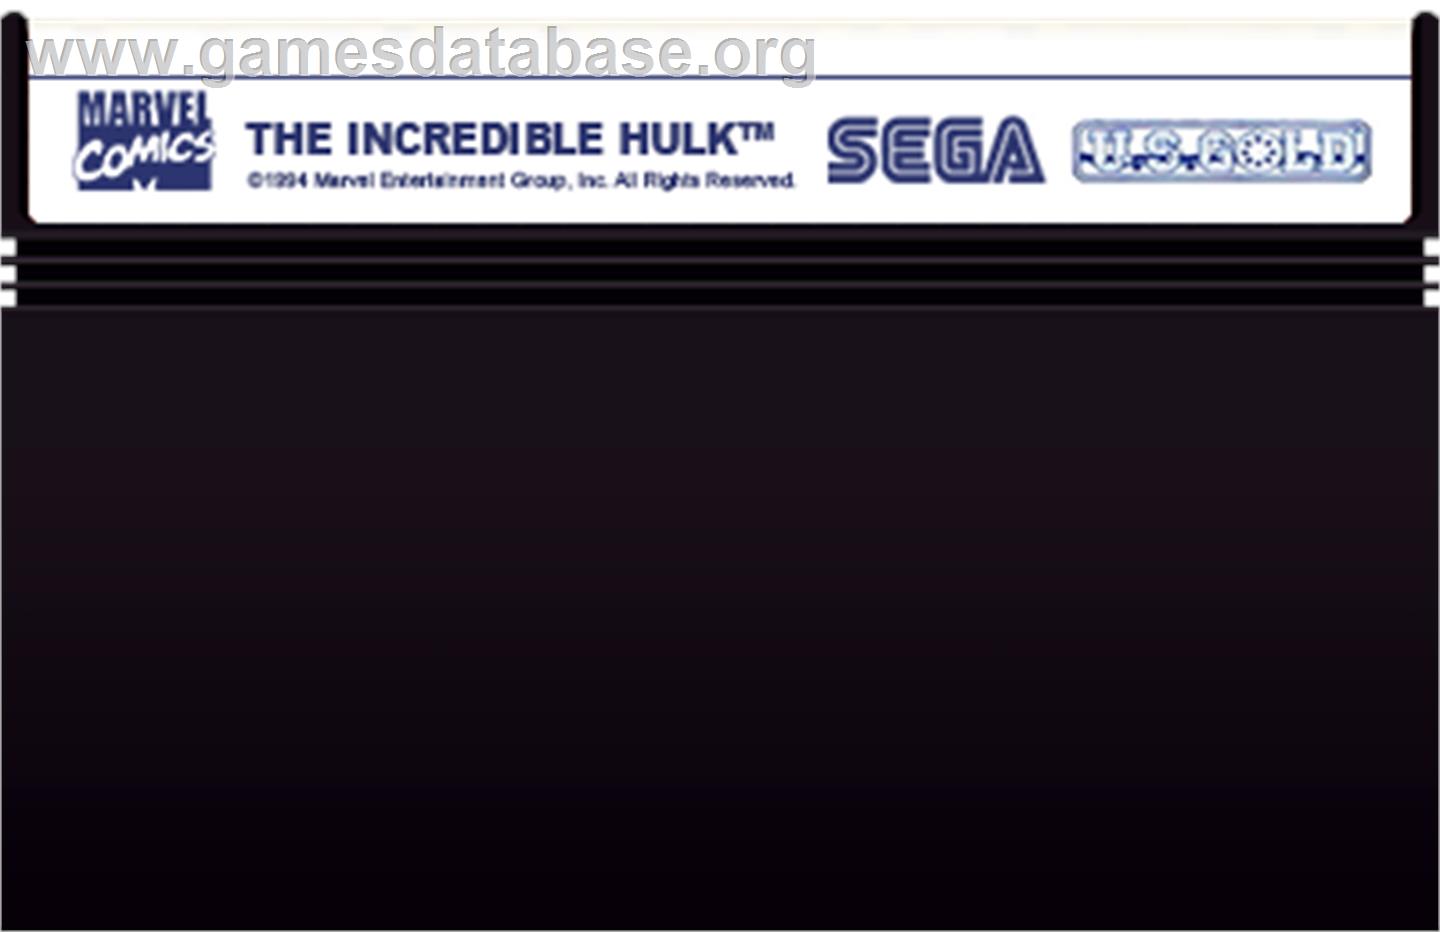 Incredible Hulk, The - Sega Master System - Artwork - Cartridge